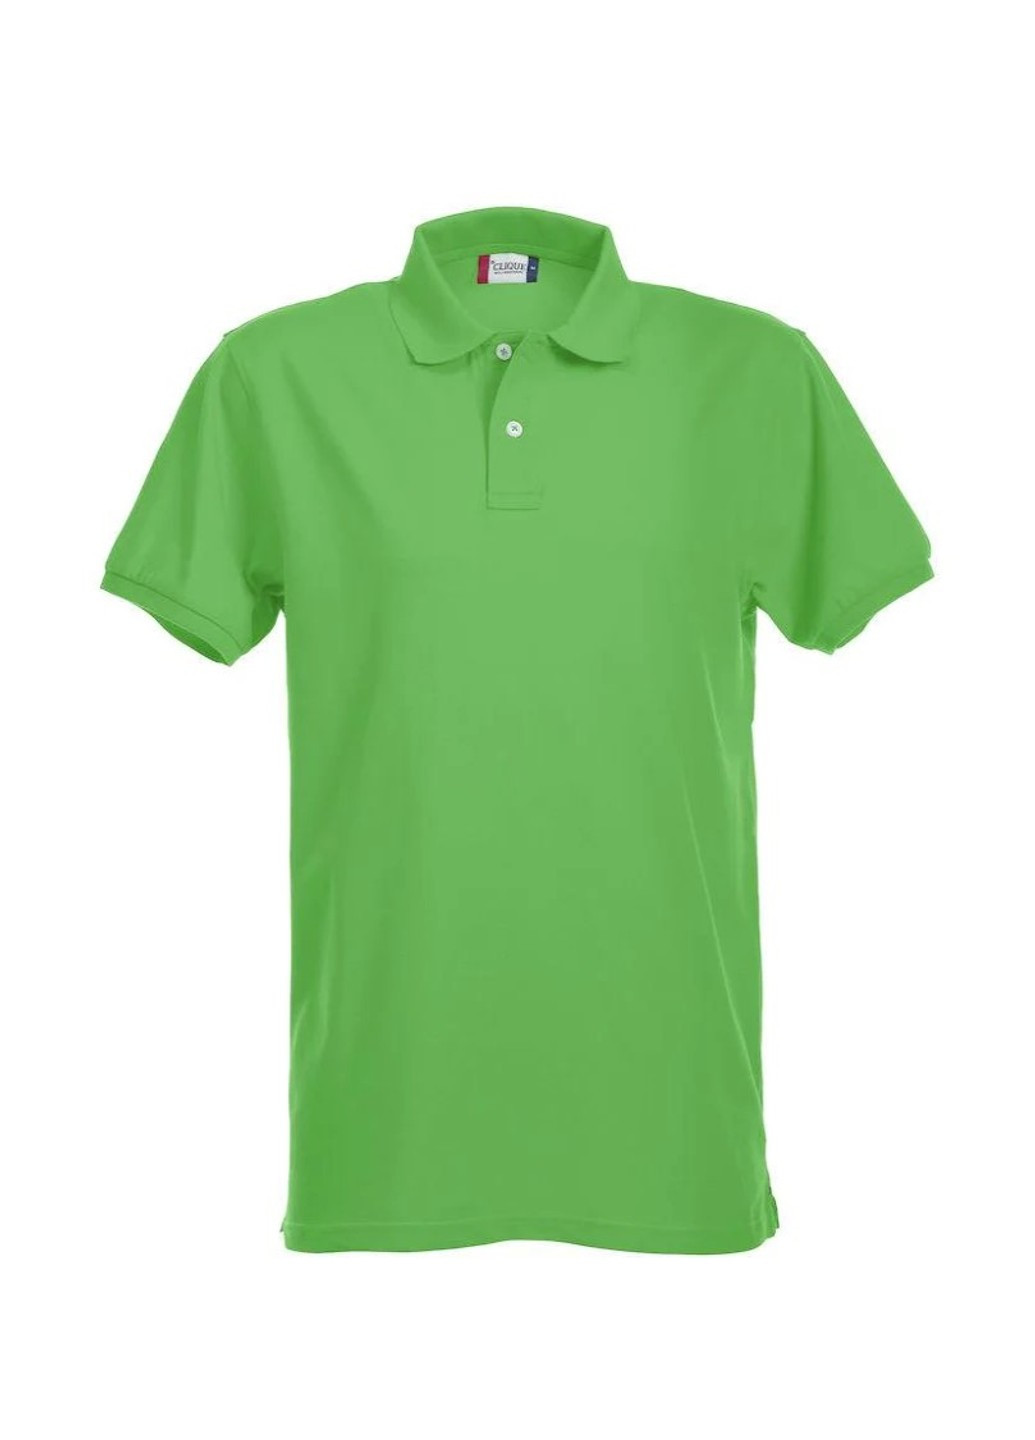 Салатовая футболка style: polo alba салатового цвета Clique